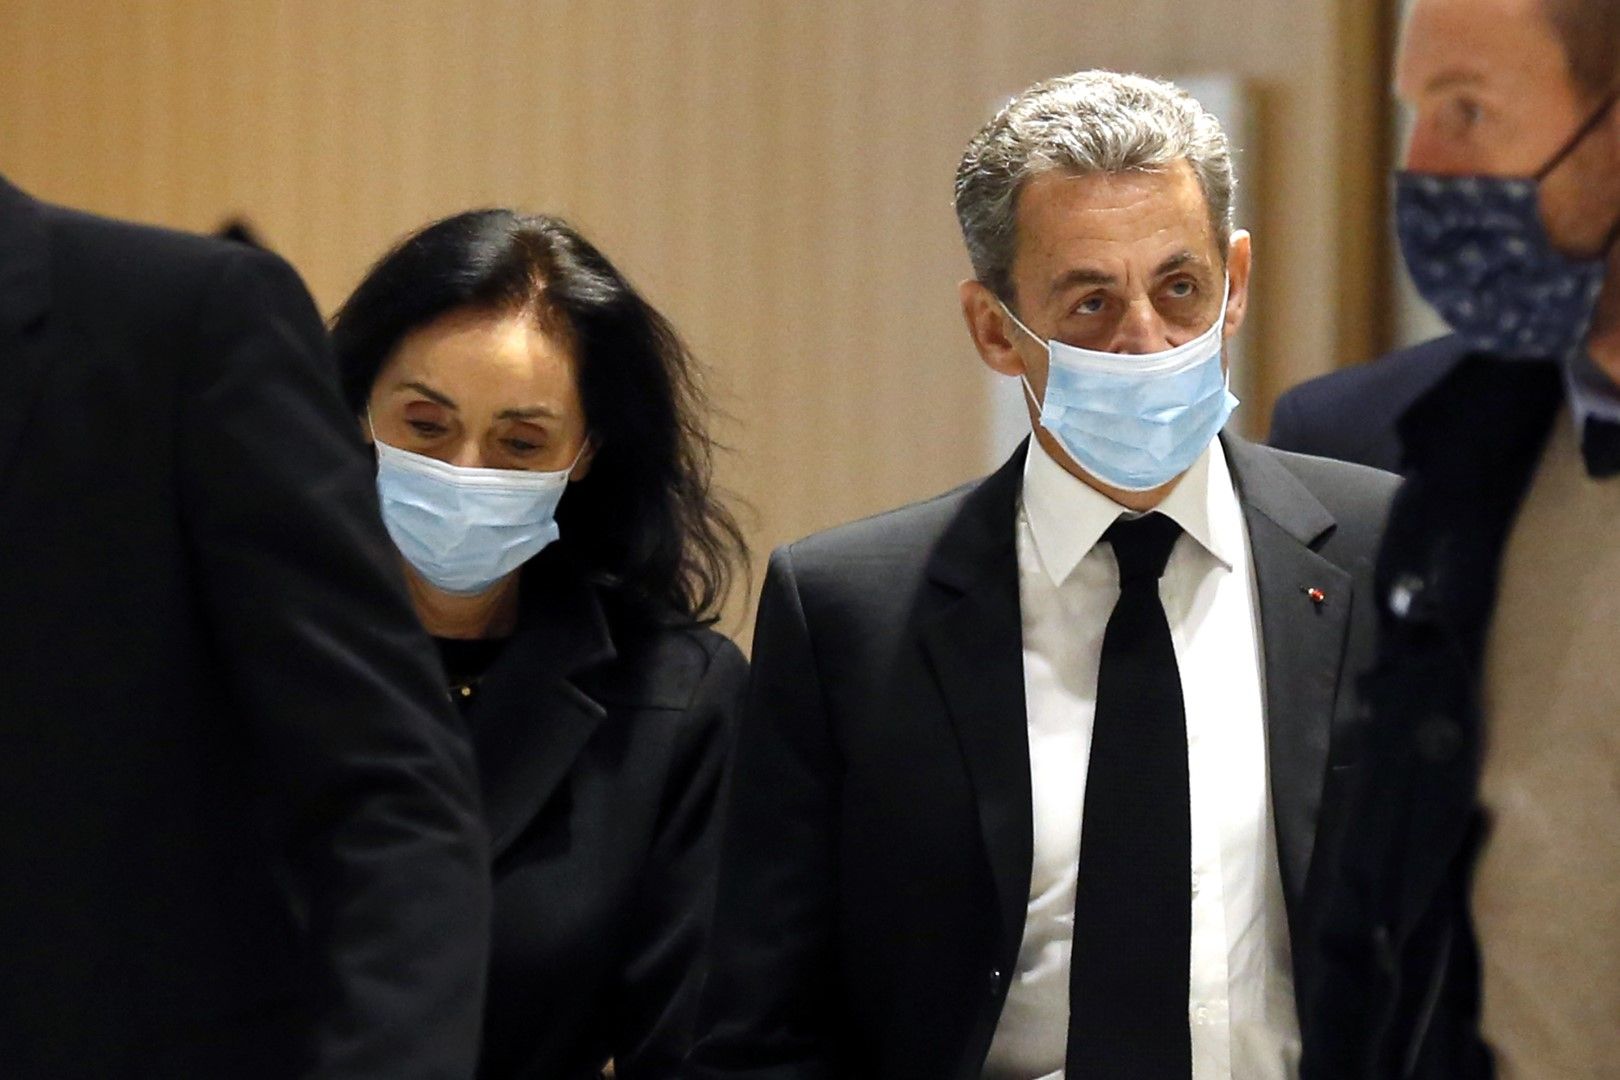 Никола Саркози и адвокатката му Жаклин Лафонт, която пледира за анулиране на целия процес заради много сериозни процедурни нарушения